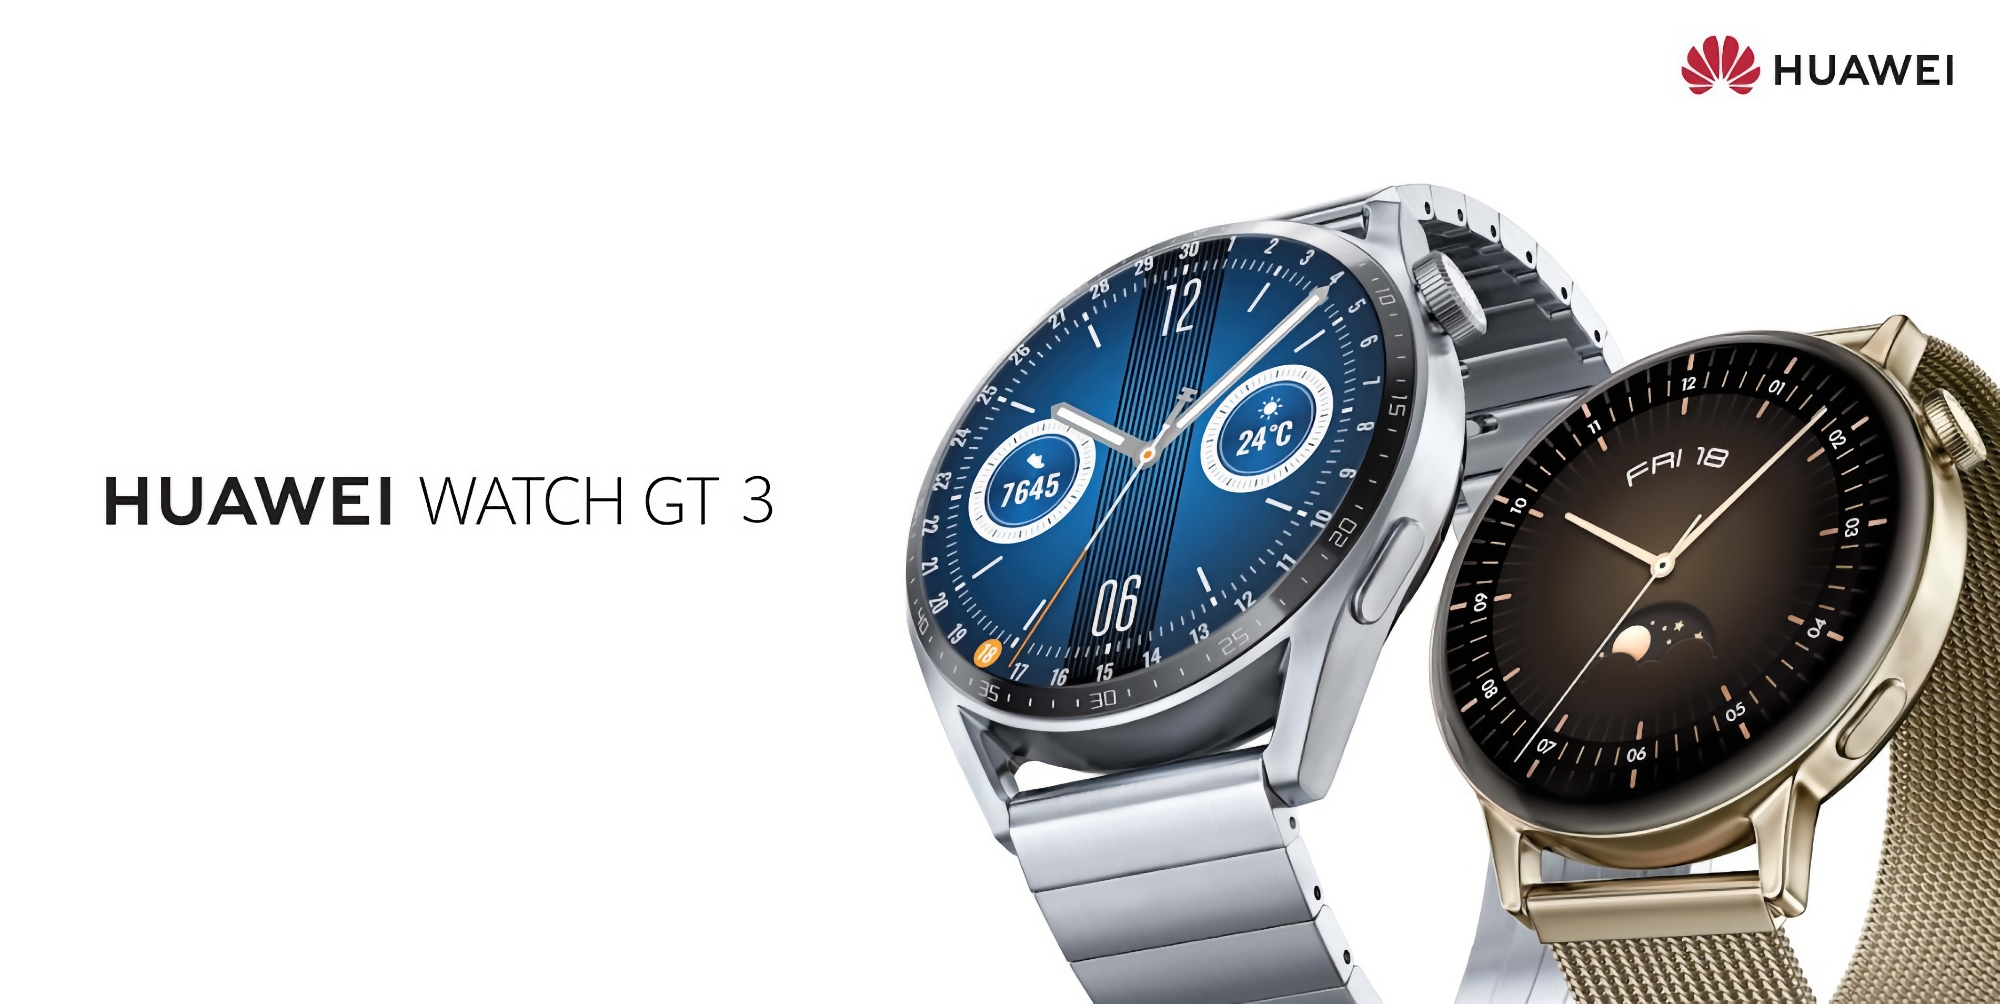 Die Huawei Watch GT 3 bekommt mit dem Update jede Menge neue Features